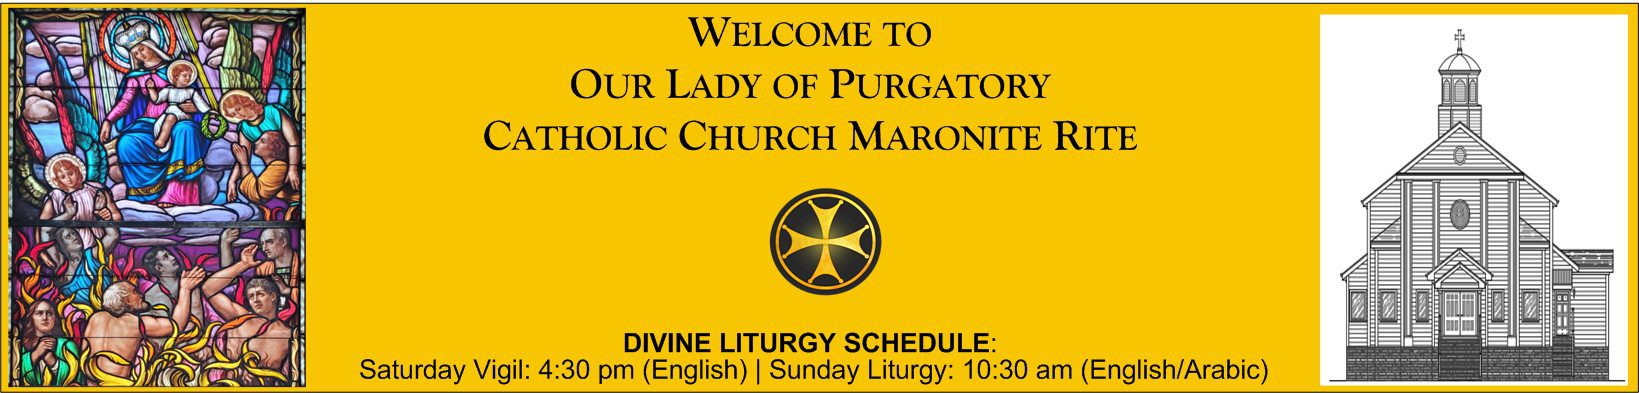 Our Lady of Purgatory Maronite Catholic Church